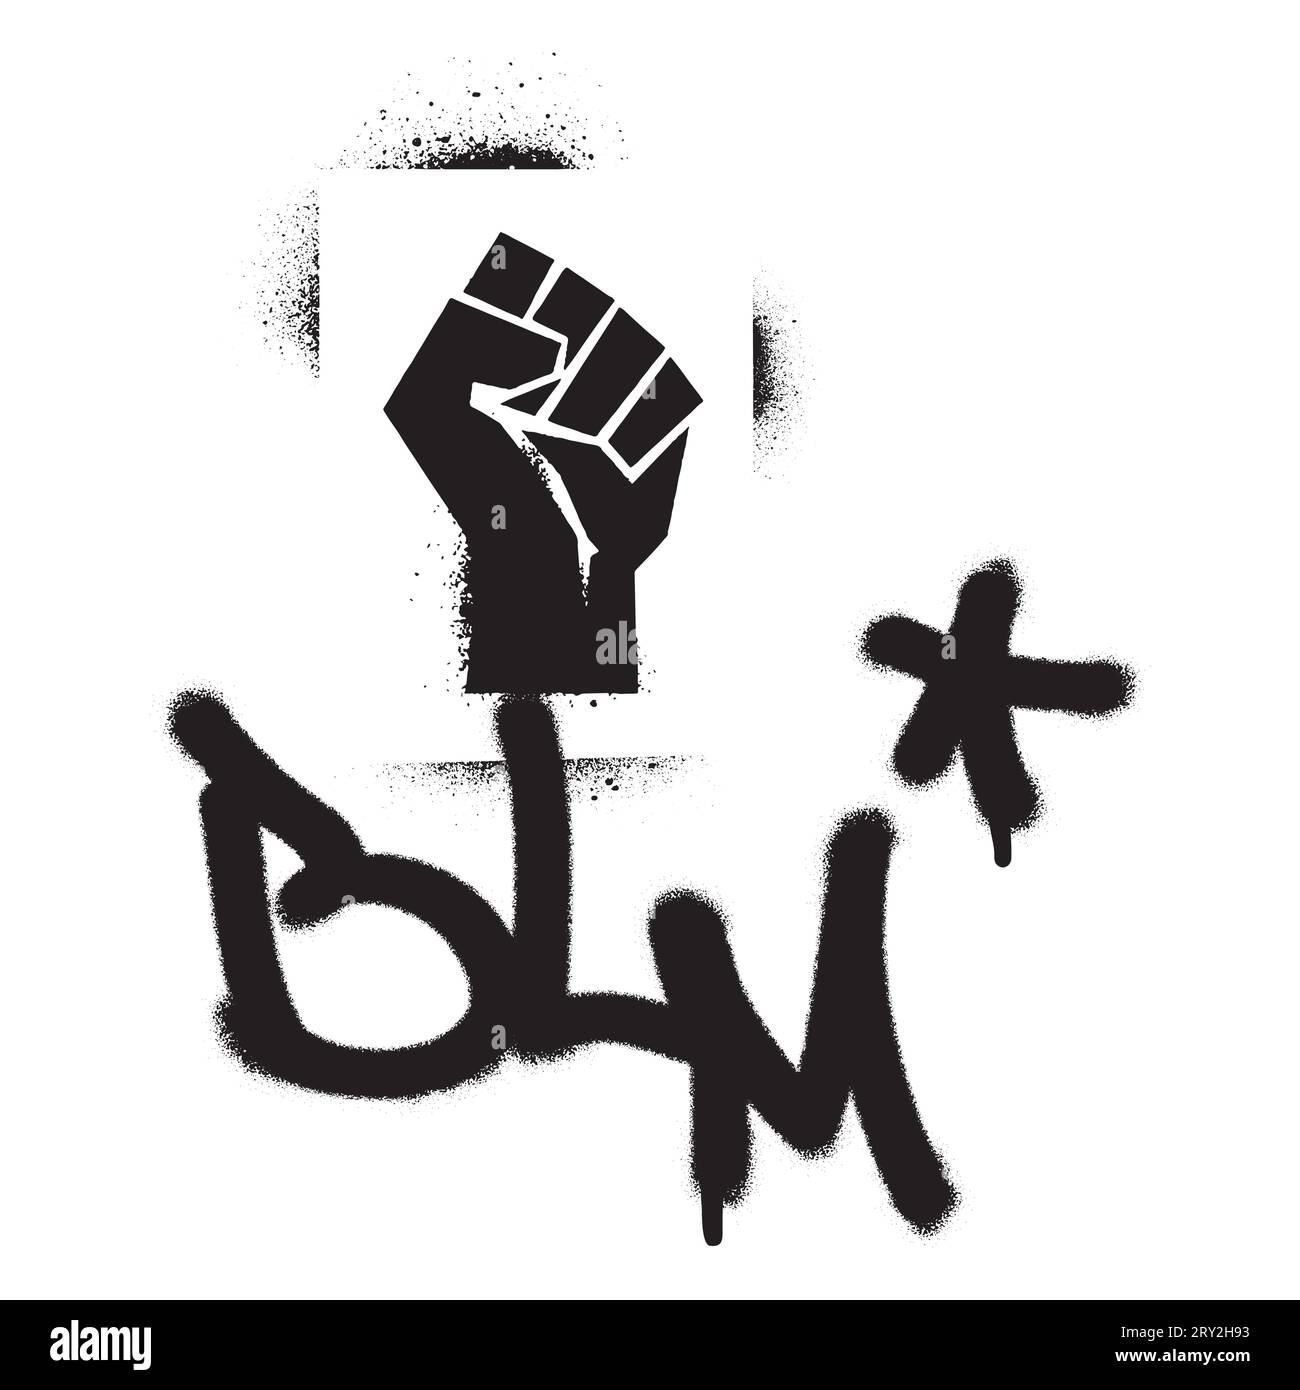 Hochgezogene Faust-Sprühfarbe Graffiti-Schablone und BLM-Abkürzung BLACK LIFE MATTER Zitat. Antirassistische Bewegung. Stock Vektor